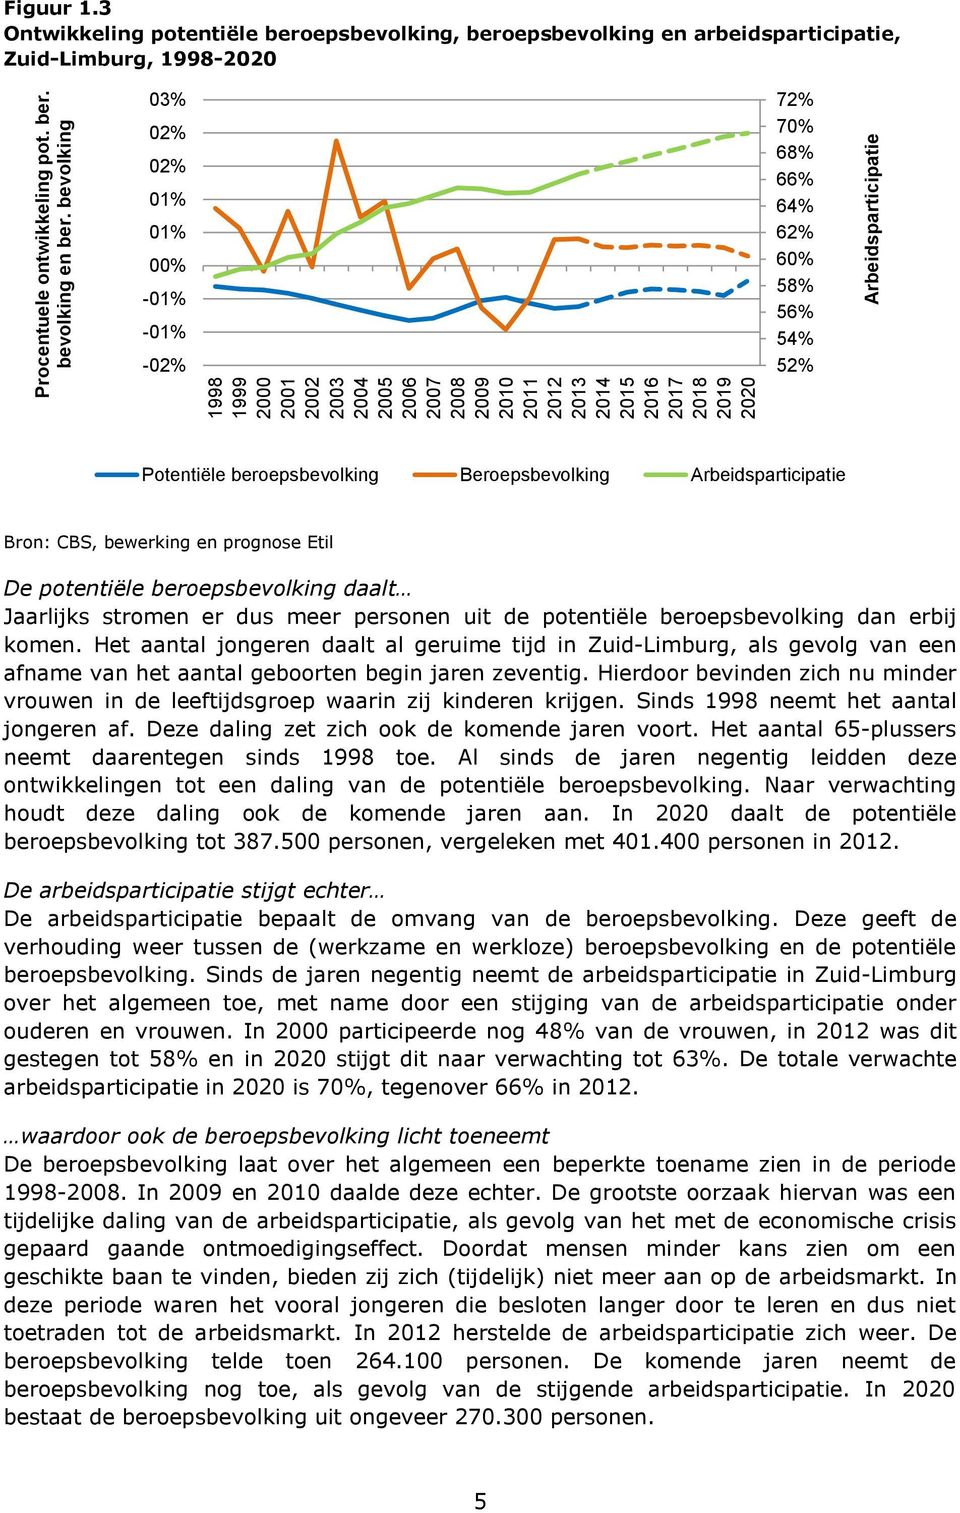 3 Ontwikkeling potentiële beroepsbevolking, beroepsbevolking en arbeidsparticipatie, Zuid-Limburg, 1998-2020 03% 02% 02% 01% 01% 00% -01% -01% -02% 72% 70% 68% 66% 64% 62% 60% 58% 56% 54% 52%